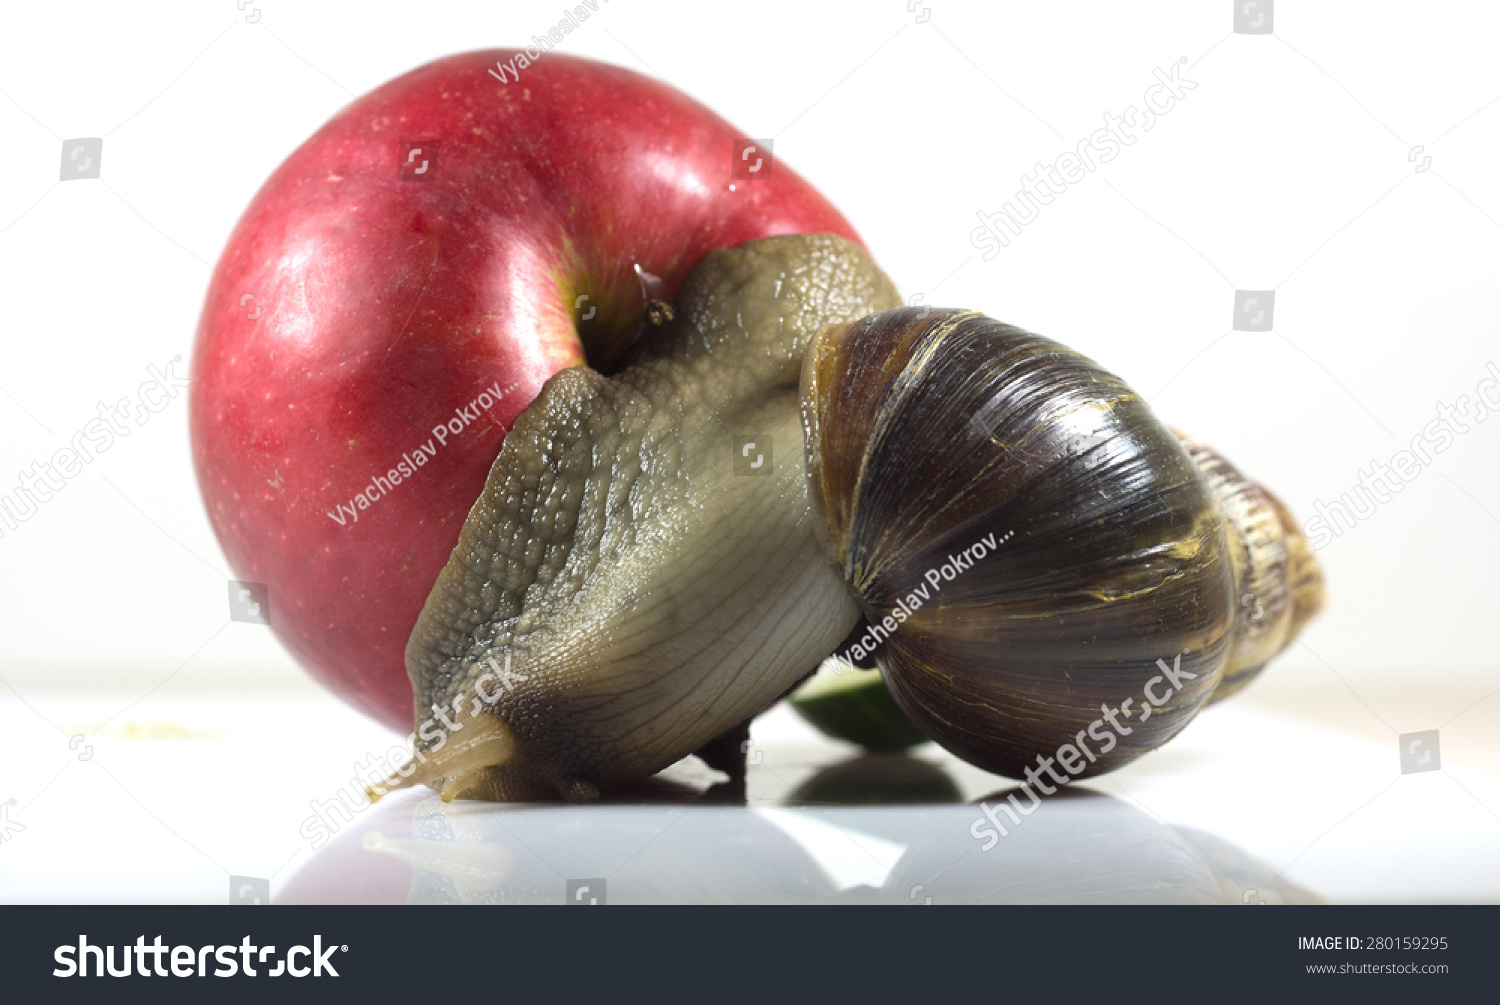 非洲的大蜗牛(Achatina fulica)吃红苹果,特写和